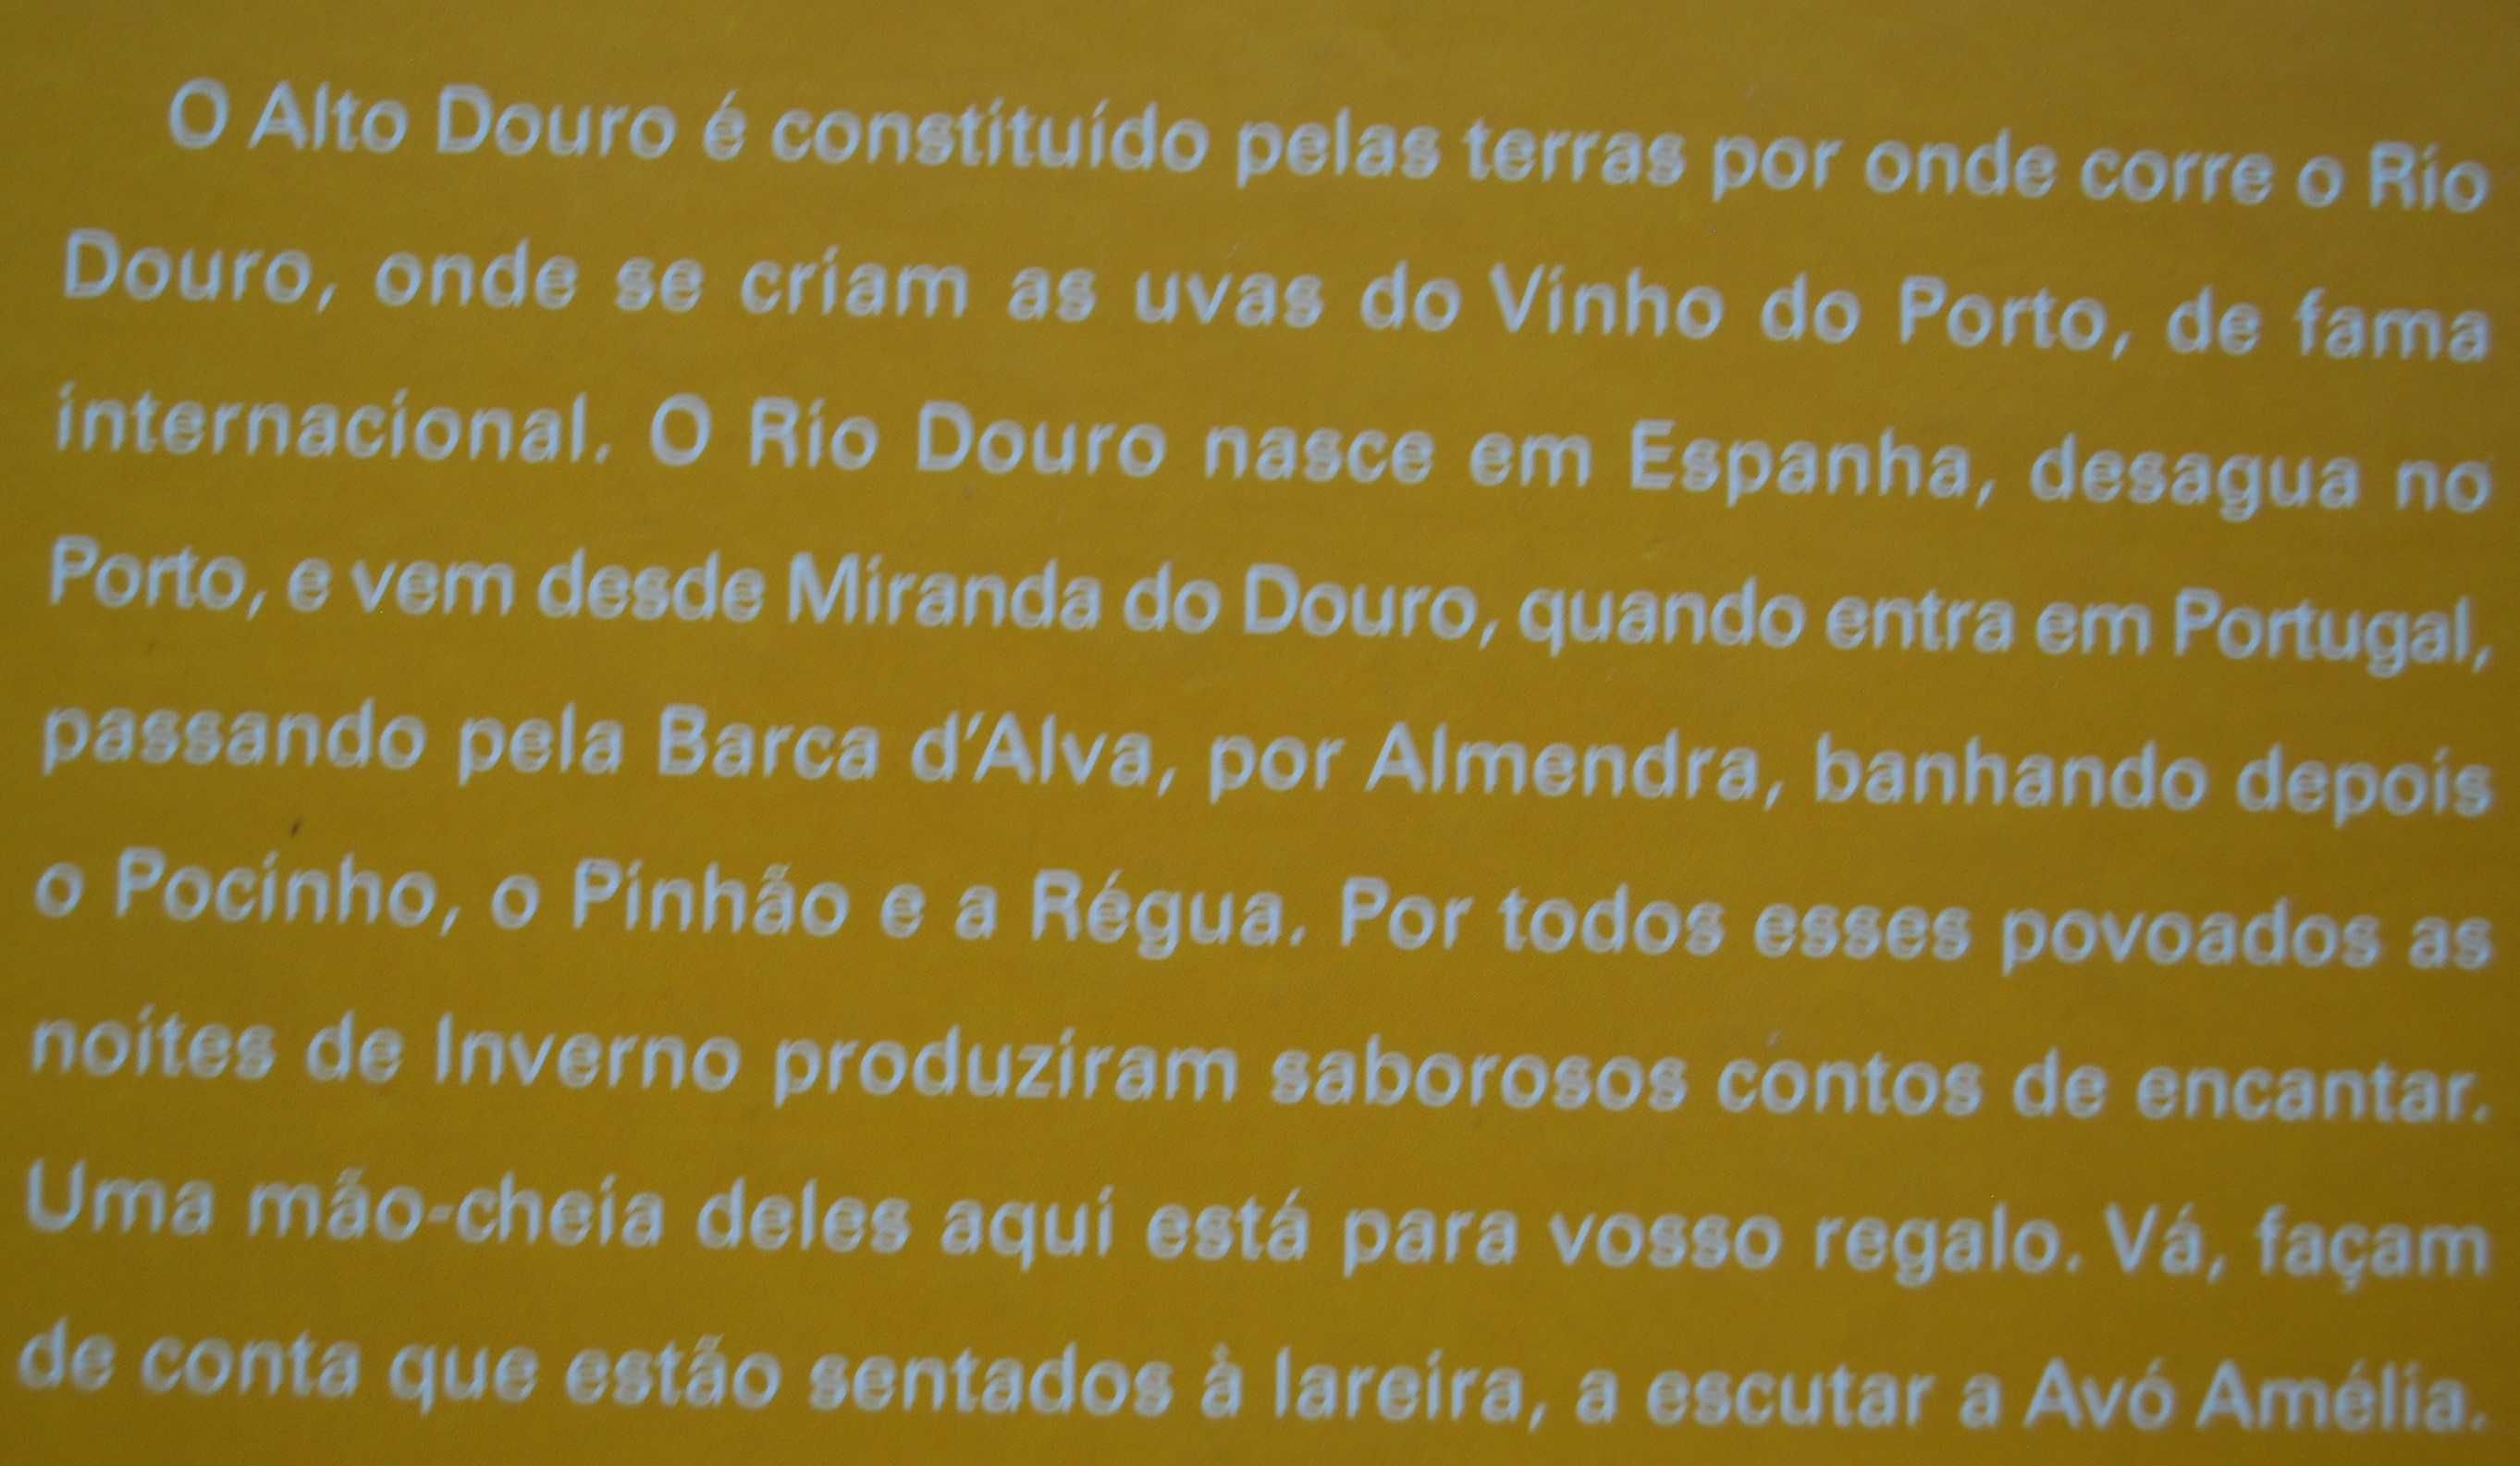 O Livrinho dos Contos do Alto Douro (Tradições Populares Portuguesas)